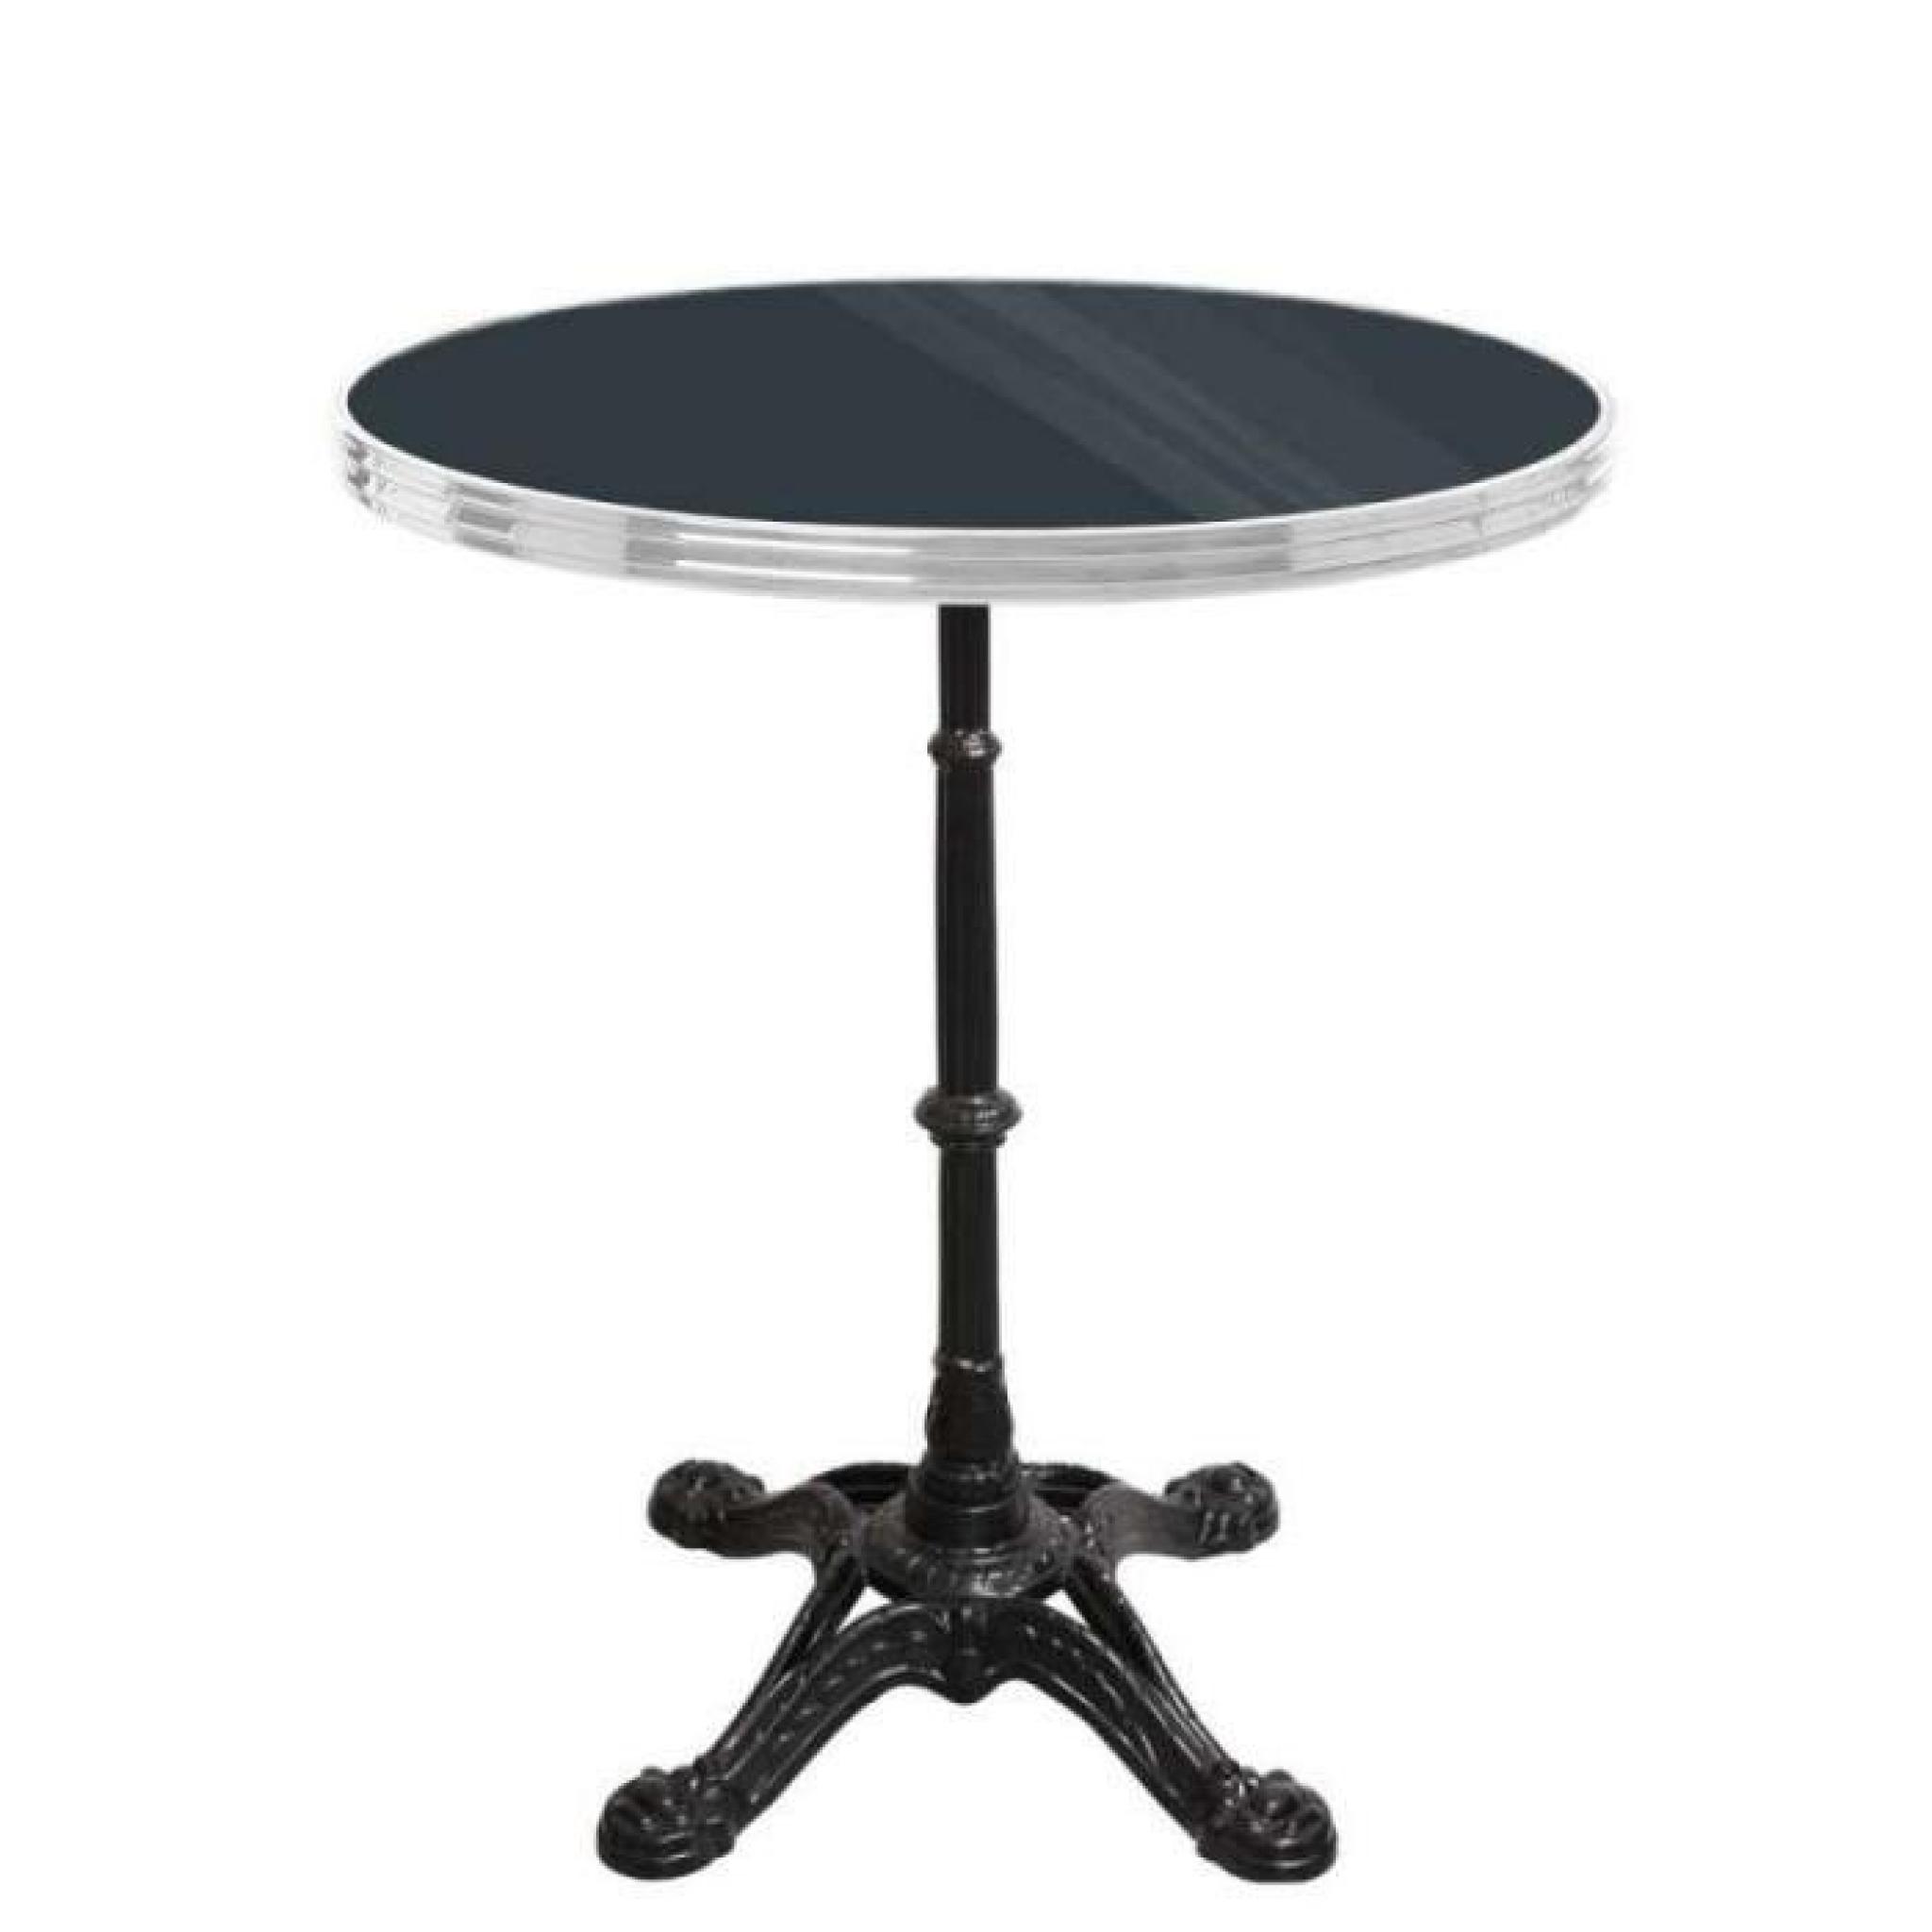 table bistrot ronde noir avec cerclage en inox - pied eiffel 4 branches - h70 x d70 cm